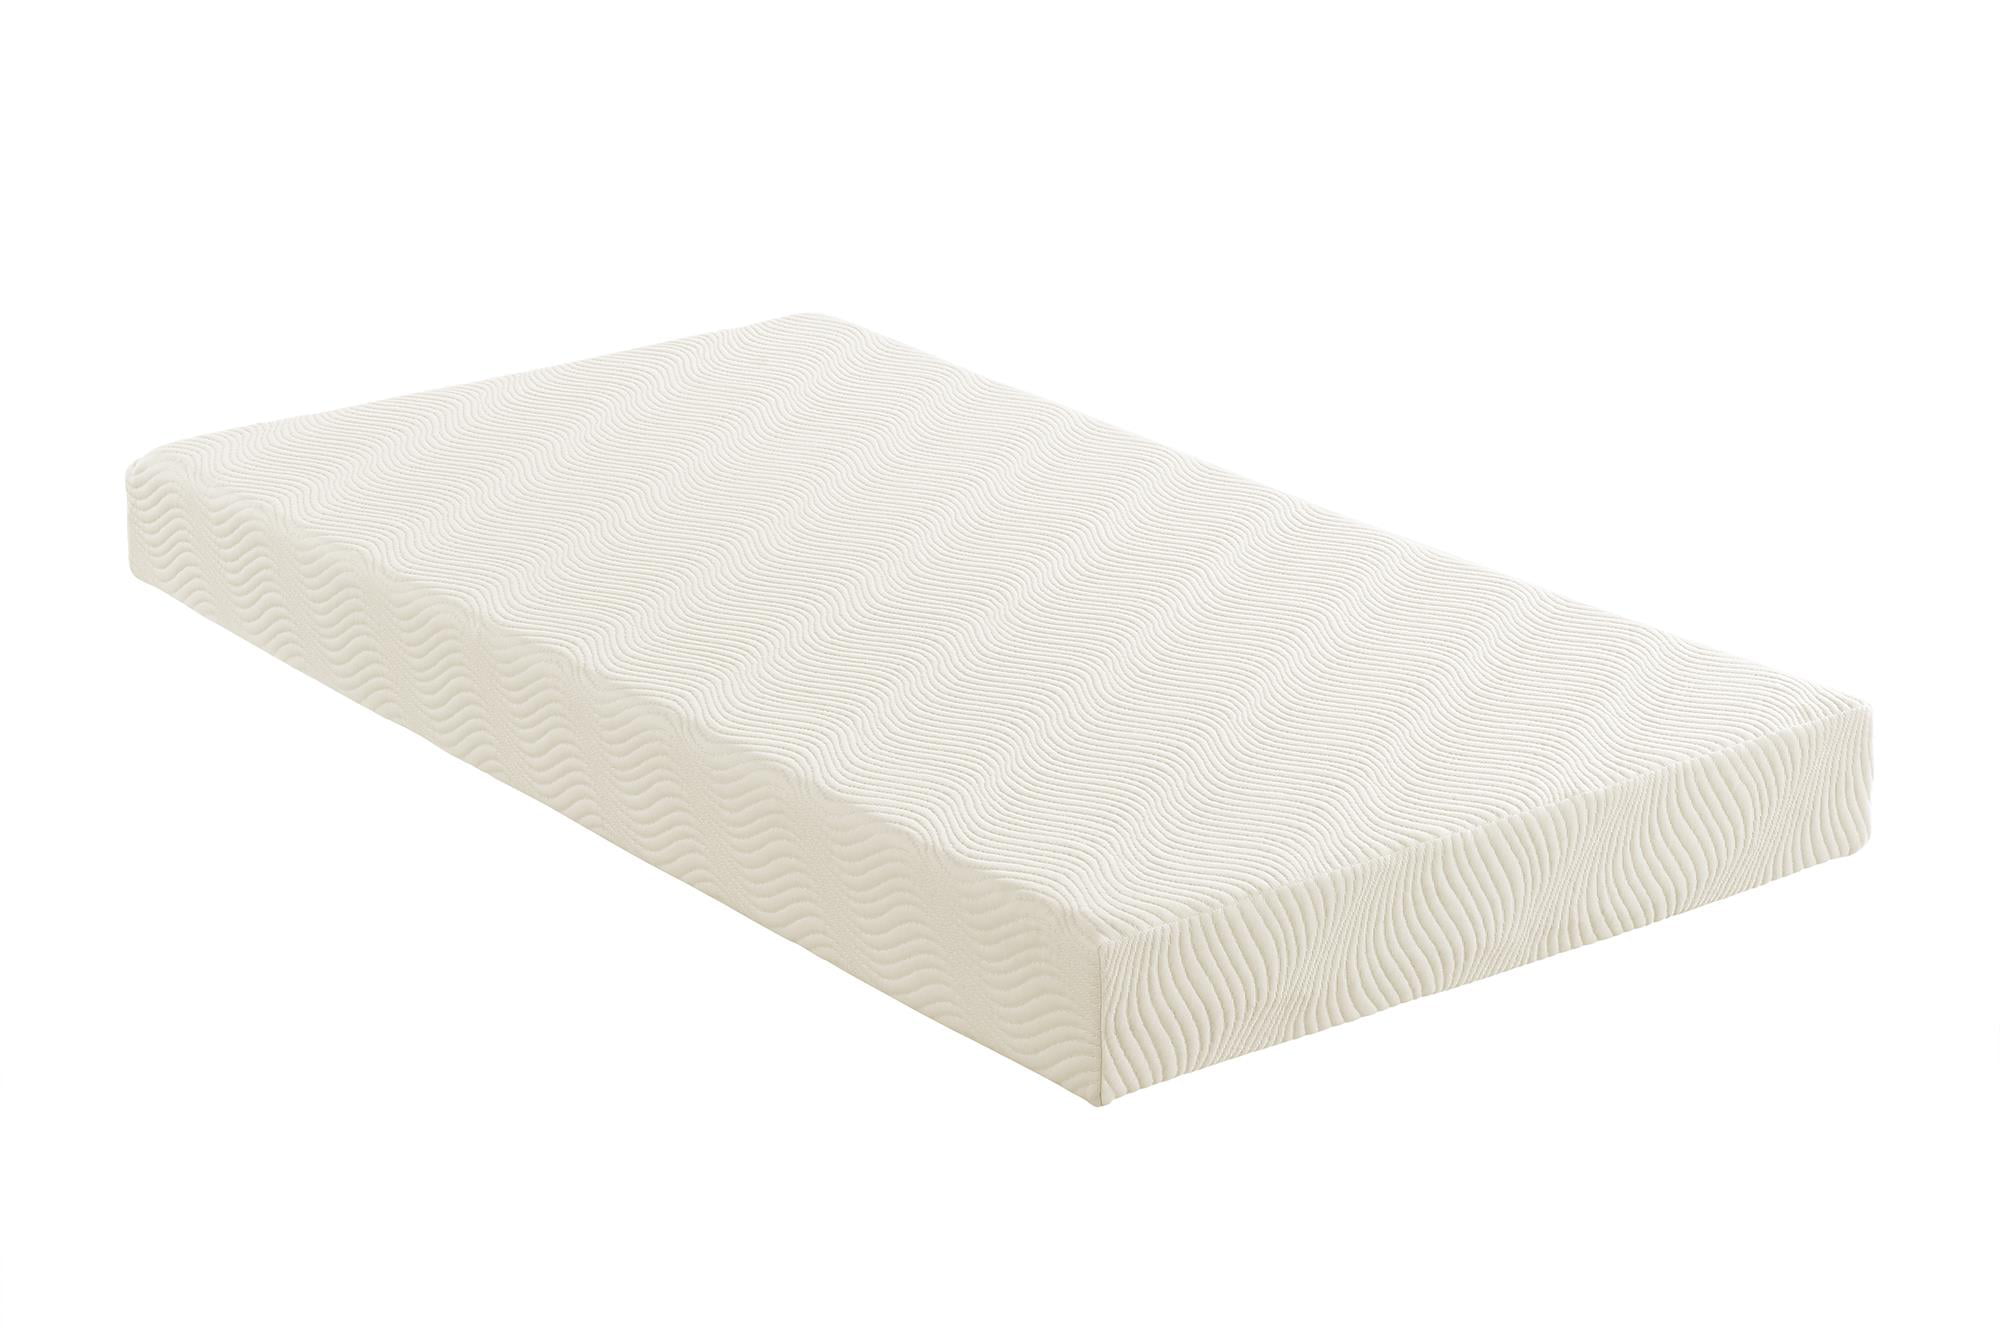 foam mattress for bunk beds